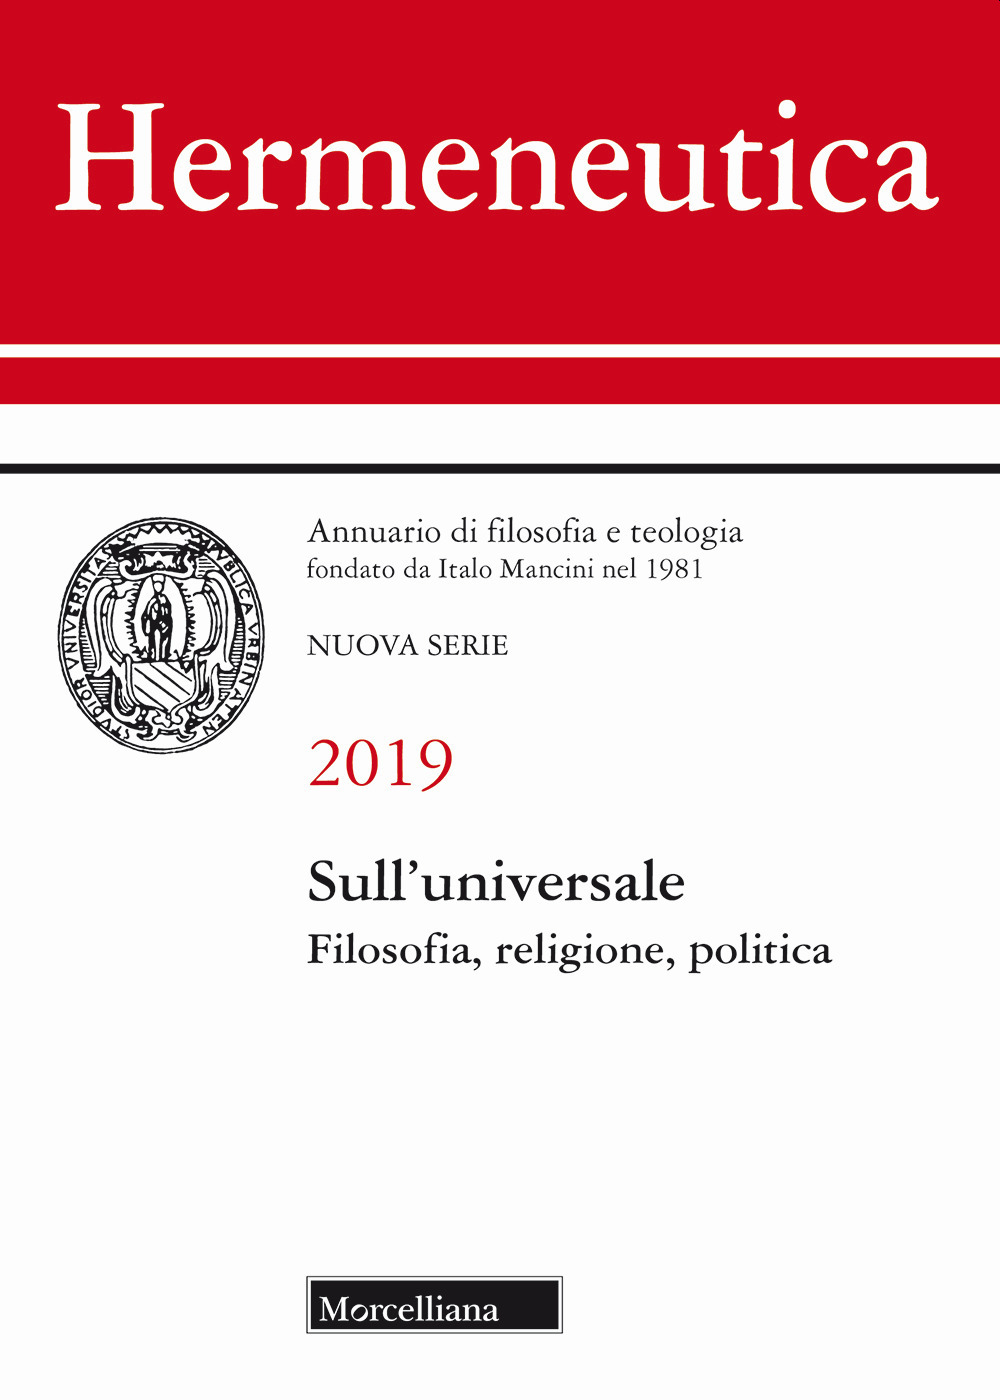 Image of Hermeneutica. Annuario di filosofia e teologia (2019). Sull'universale. Filosofia, religione, politica